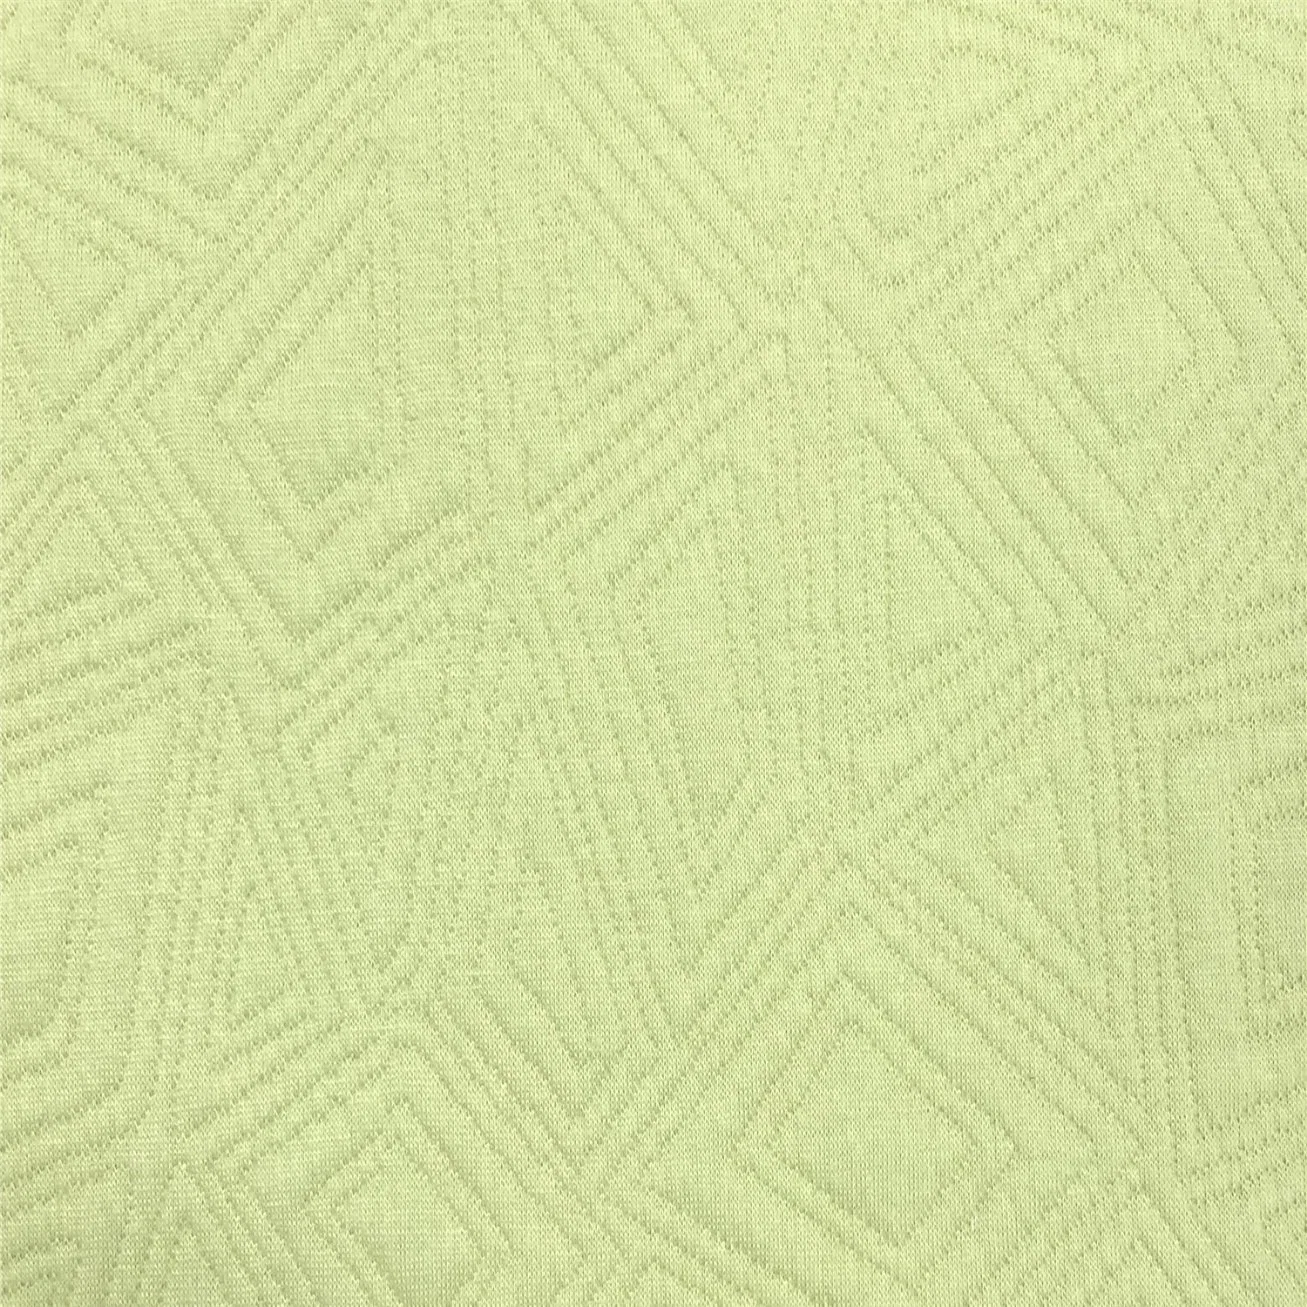 Matelas Air-Tier à tricotage jacquard Home textile polyester recyclé tissus de coton-Fgtex® -jardin de tissu écologique avec 20 ans de culture profonde